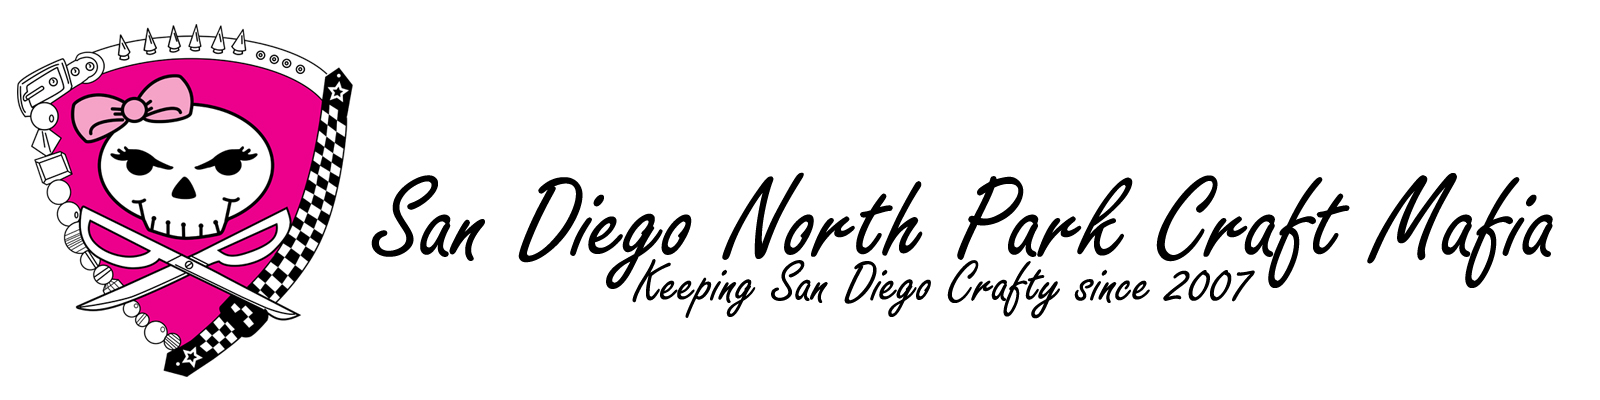 San Diego North Park Craft Mafia, Keeping San Diego Crafty Since 2007